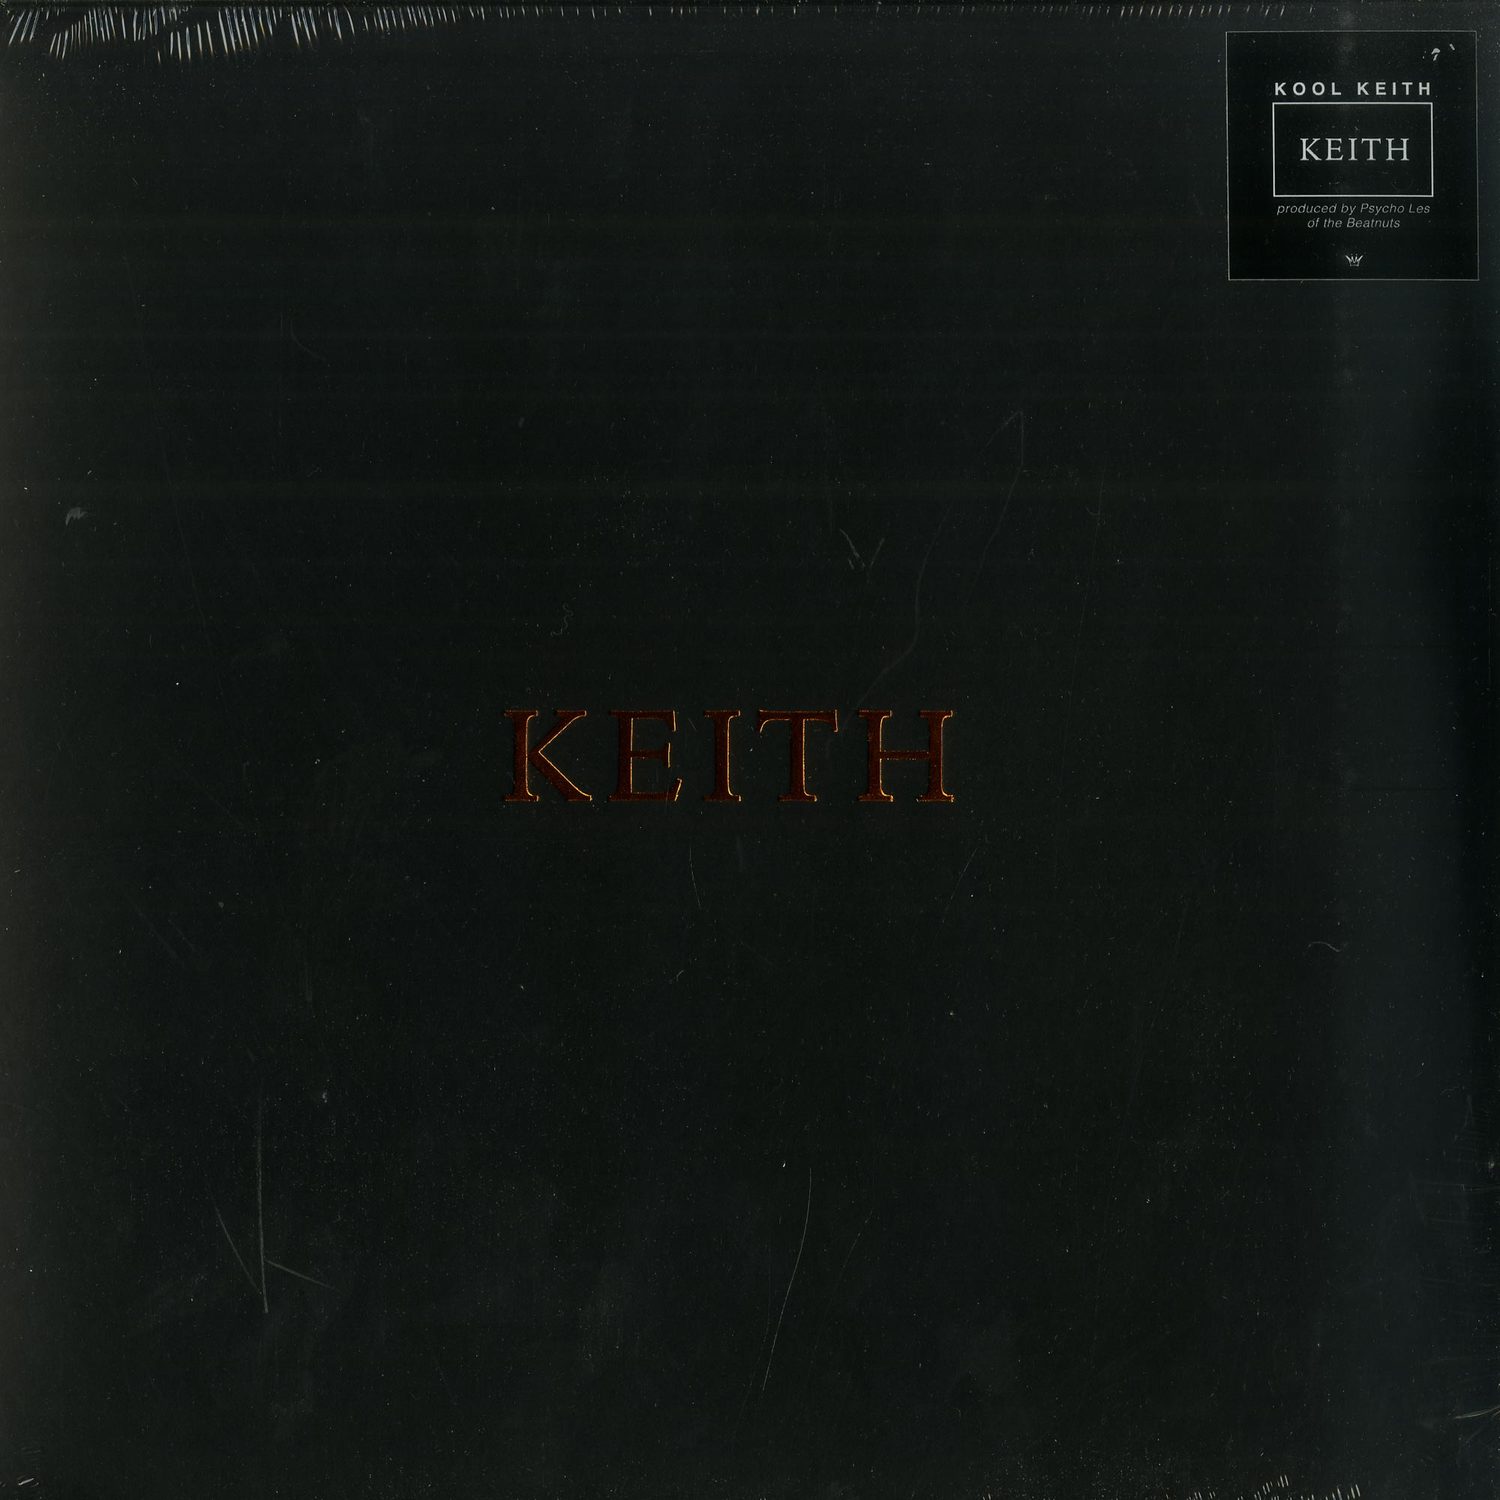 Kool Keith - KEITH 